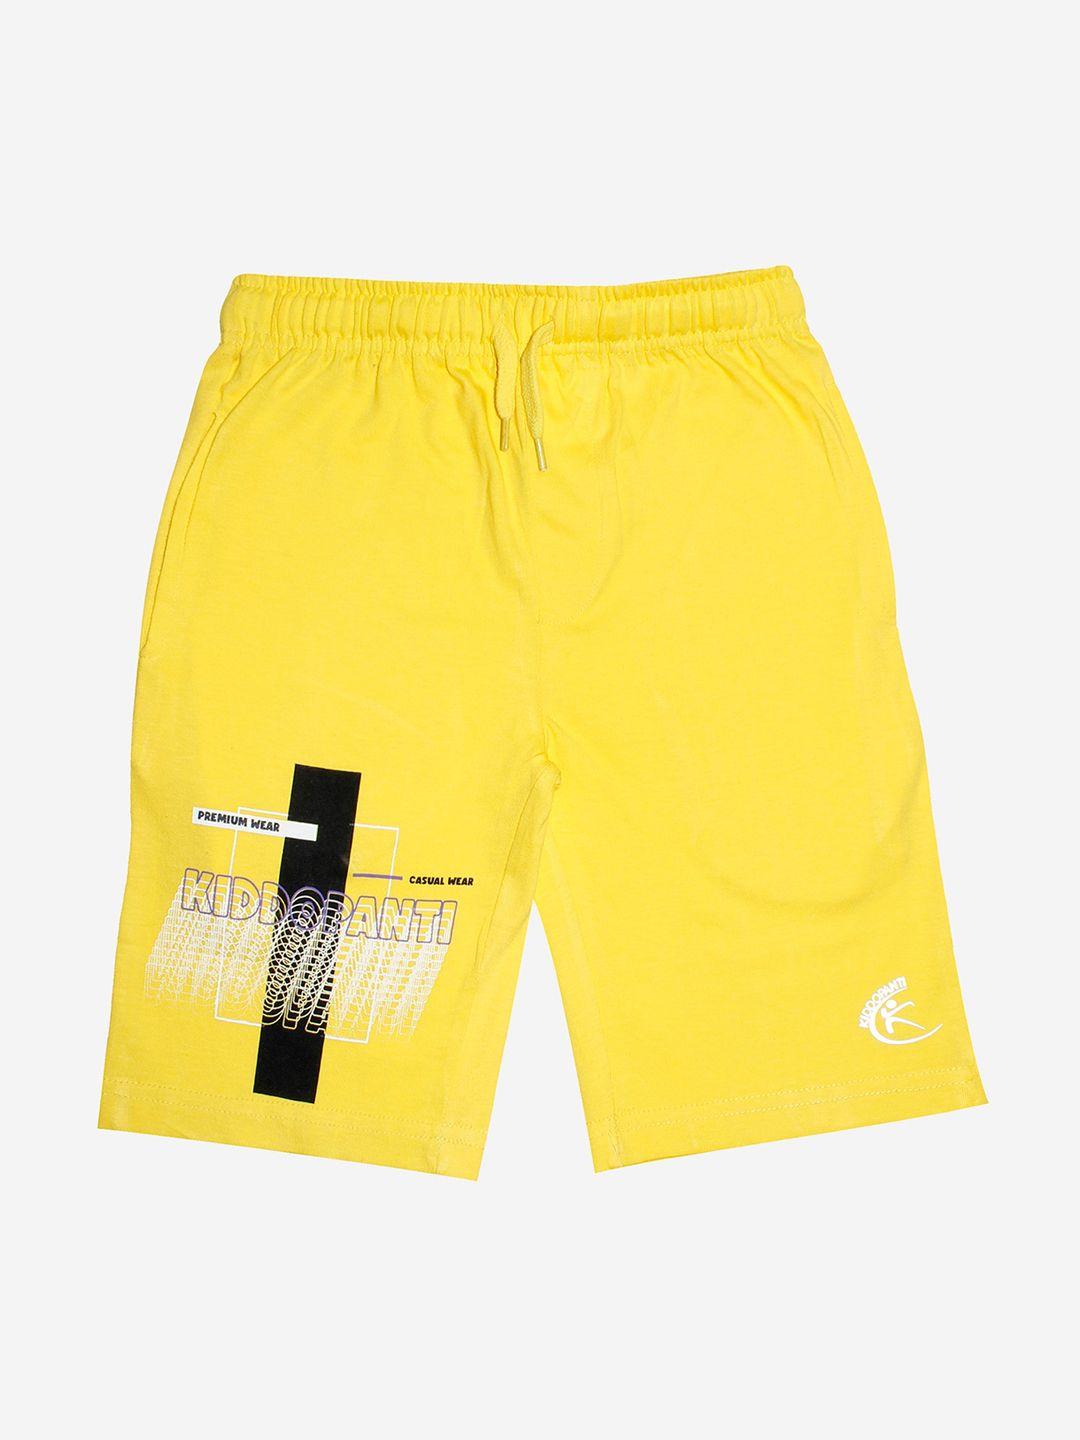 kiddopanti-boys-yellow-sports-pure-cotton-shorts